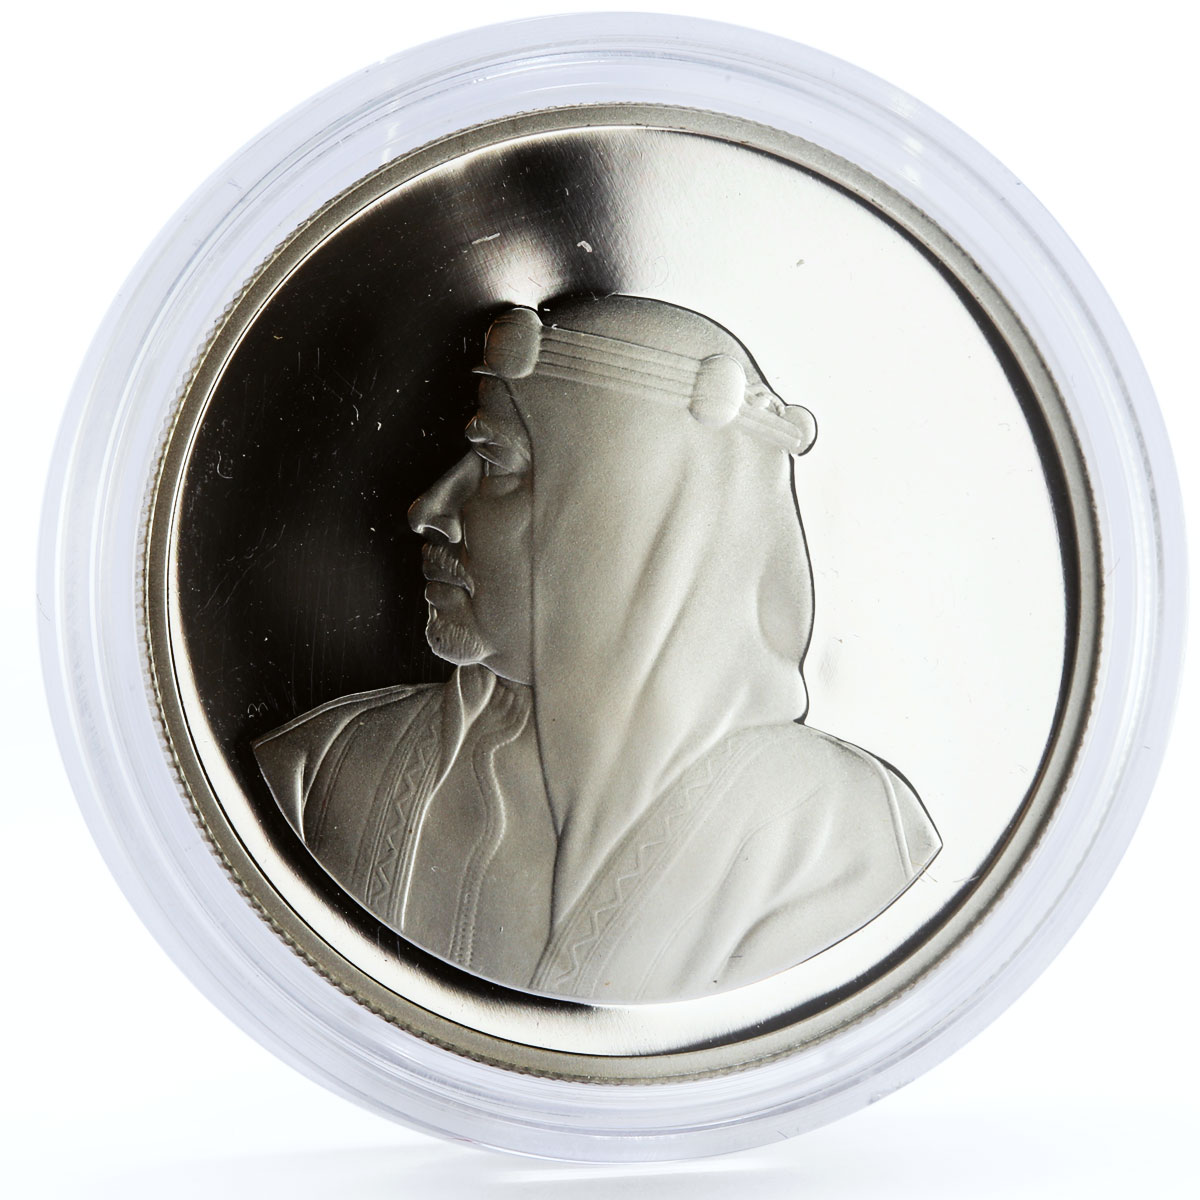 Bahrain 5 dinars World Wildlife Fund series Gazelle silver coin 1986